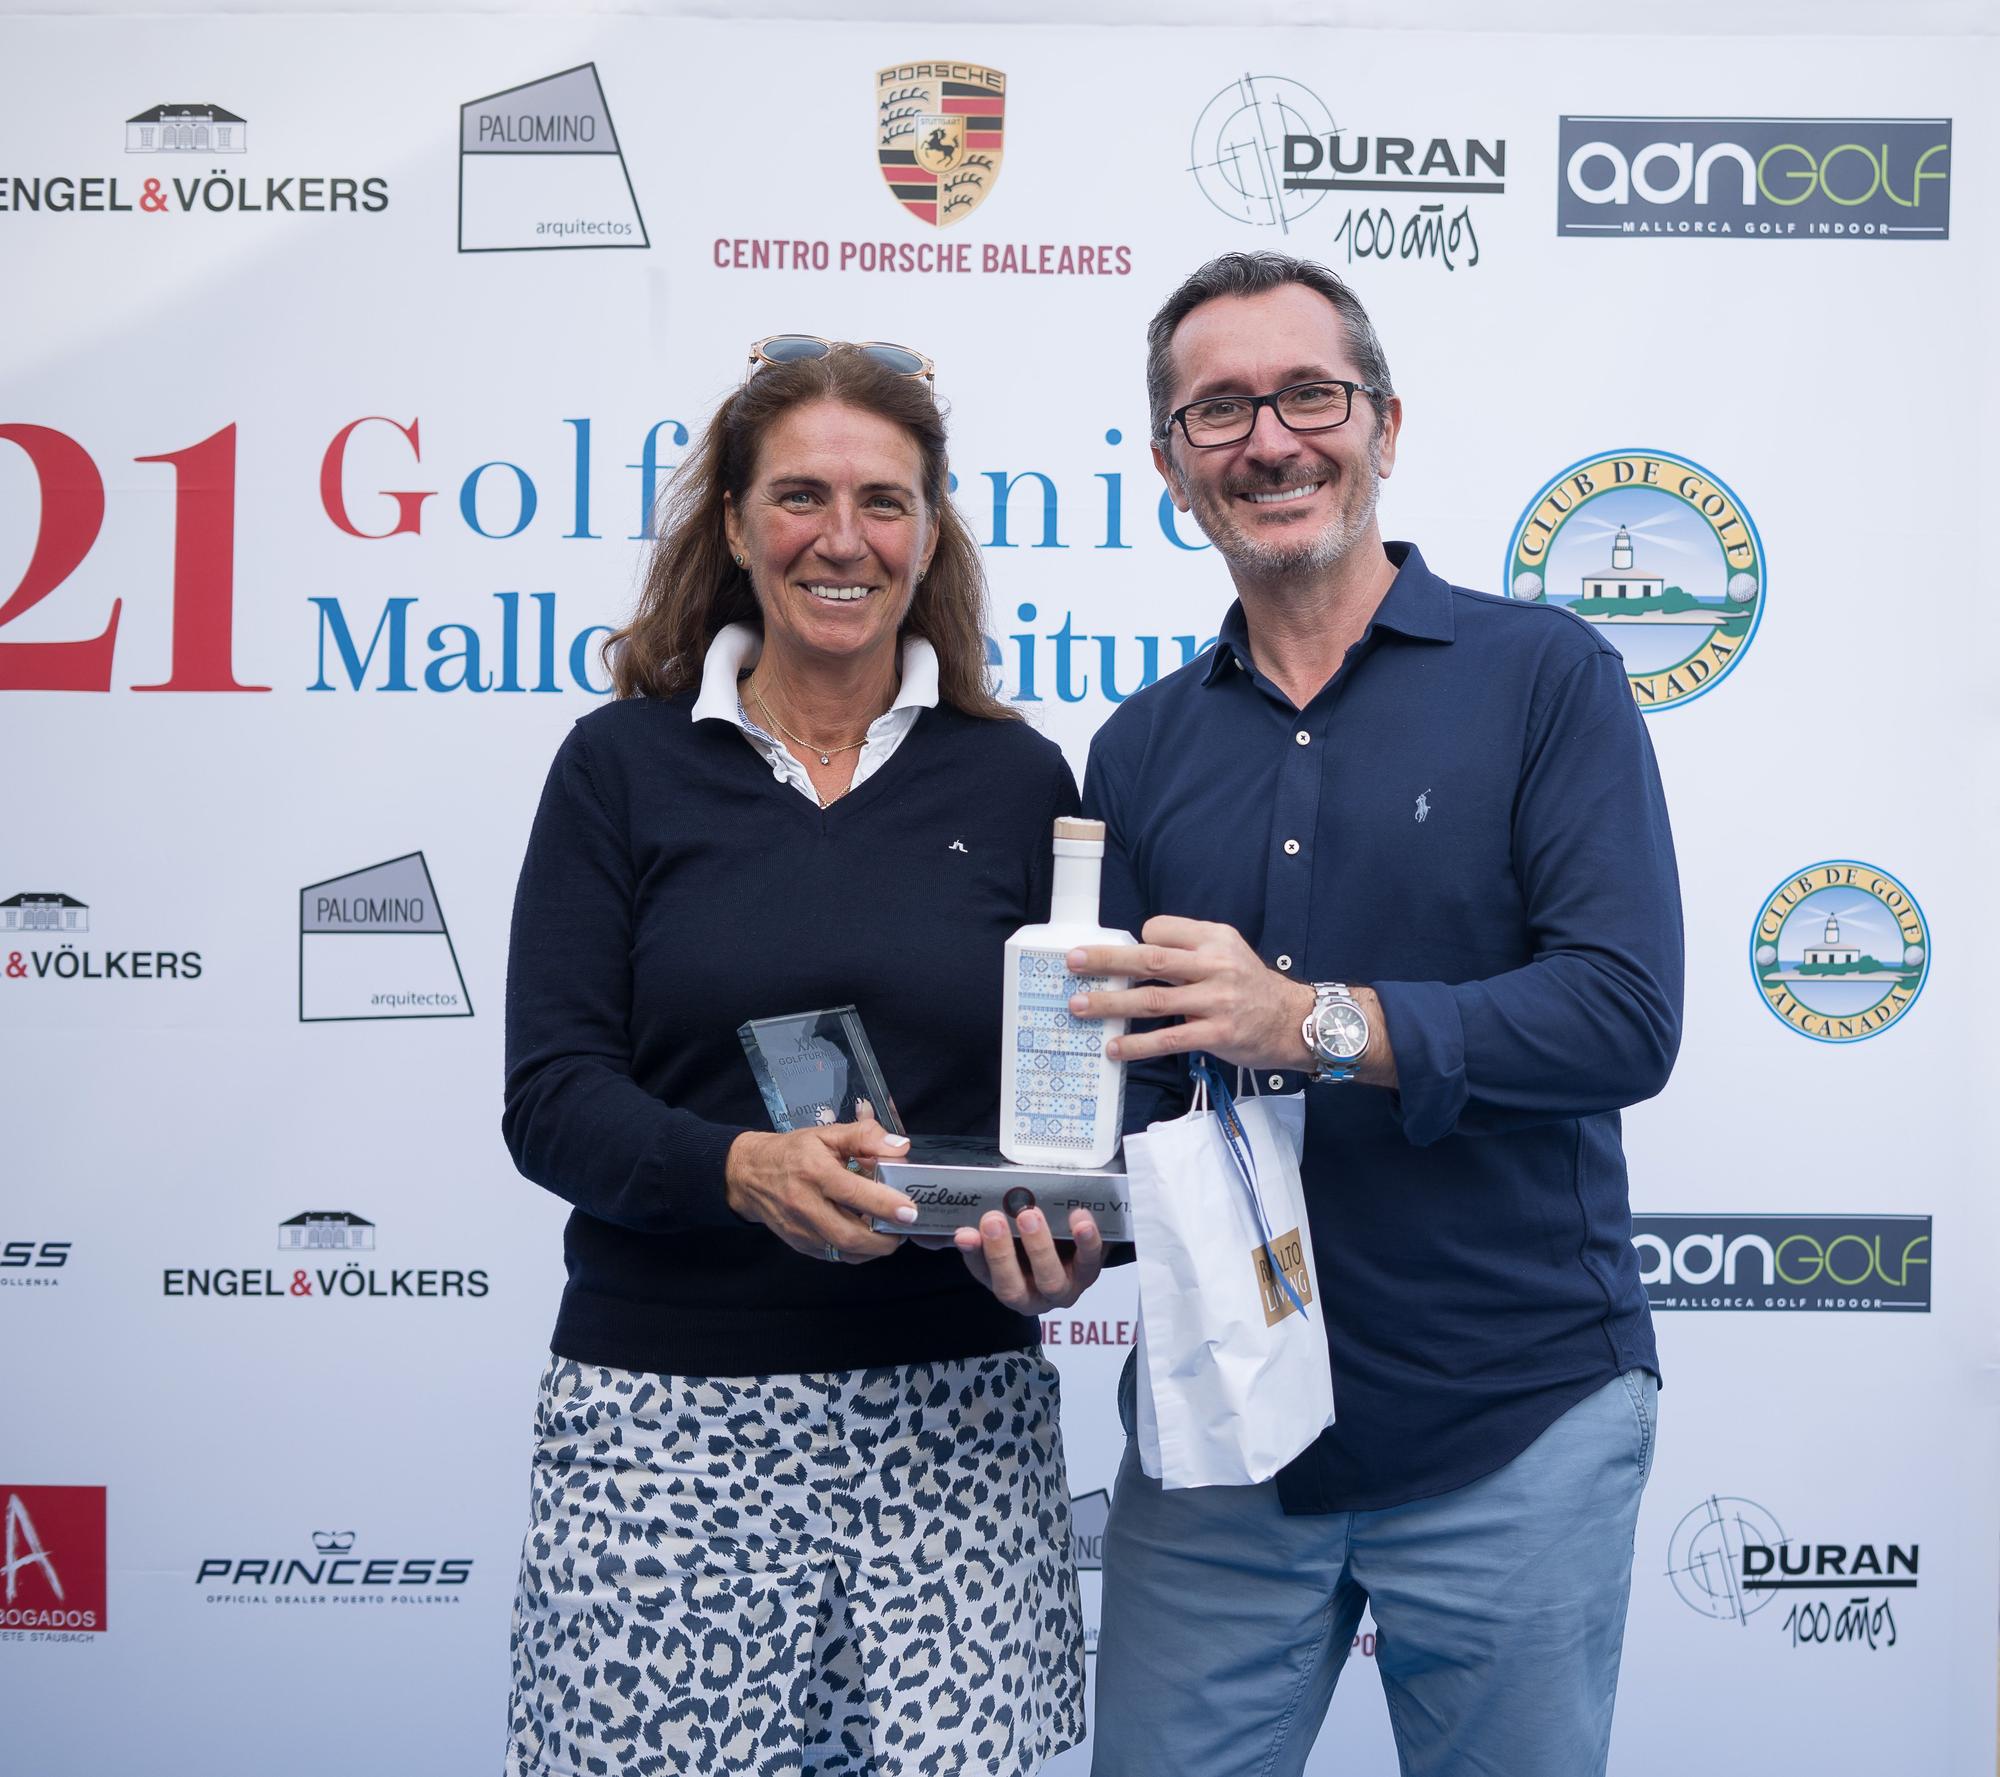 21. Golfturnier der Mallorca Zeitung in Alcanada - die Bilder der Siegerehrung